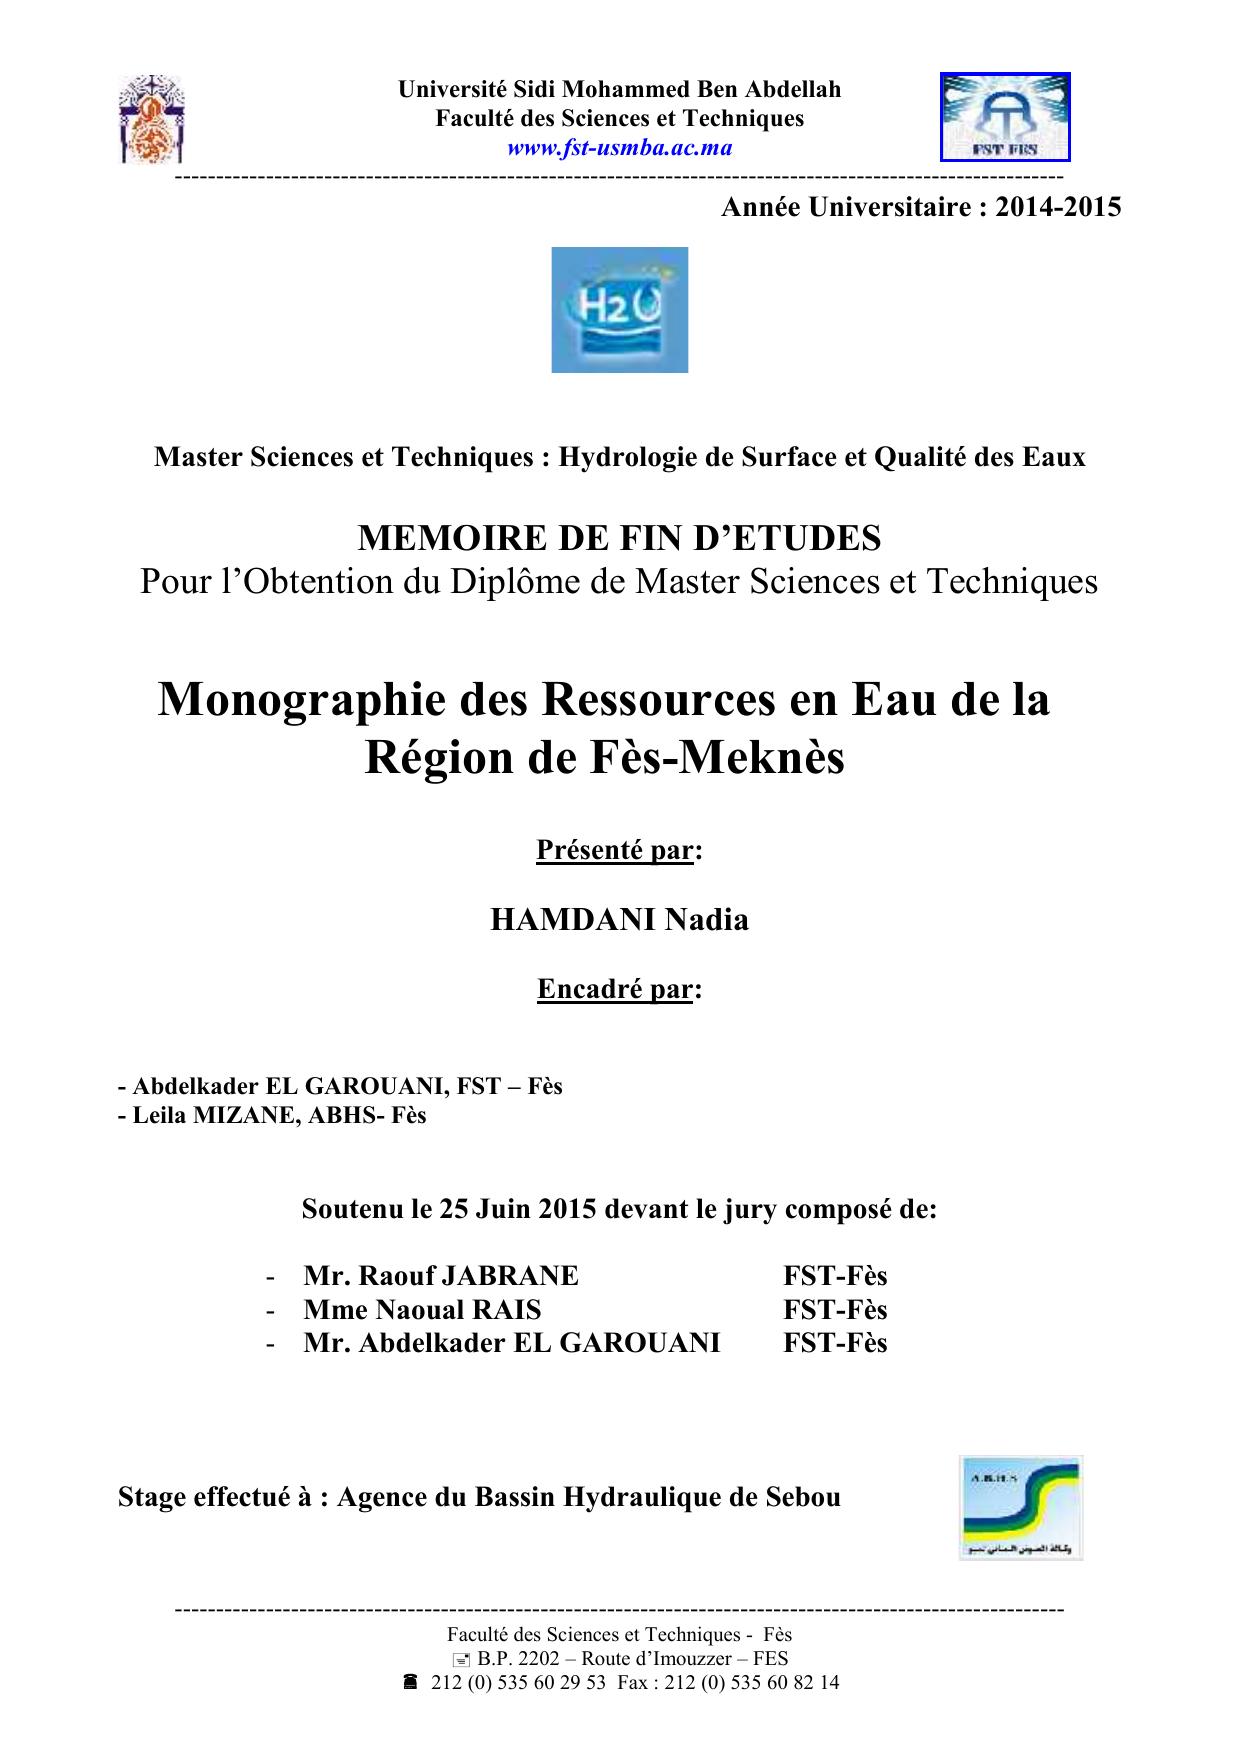 Monographie des Ressources en Eau de la Région de Fès-Meknès